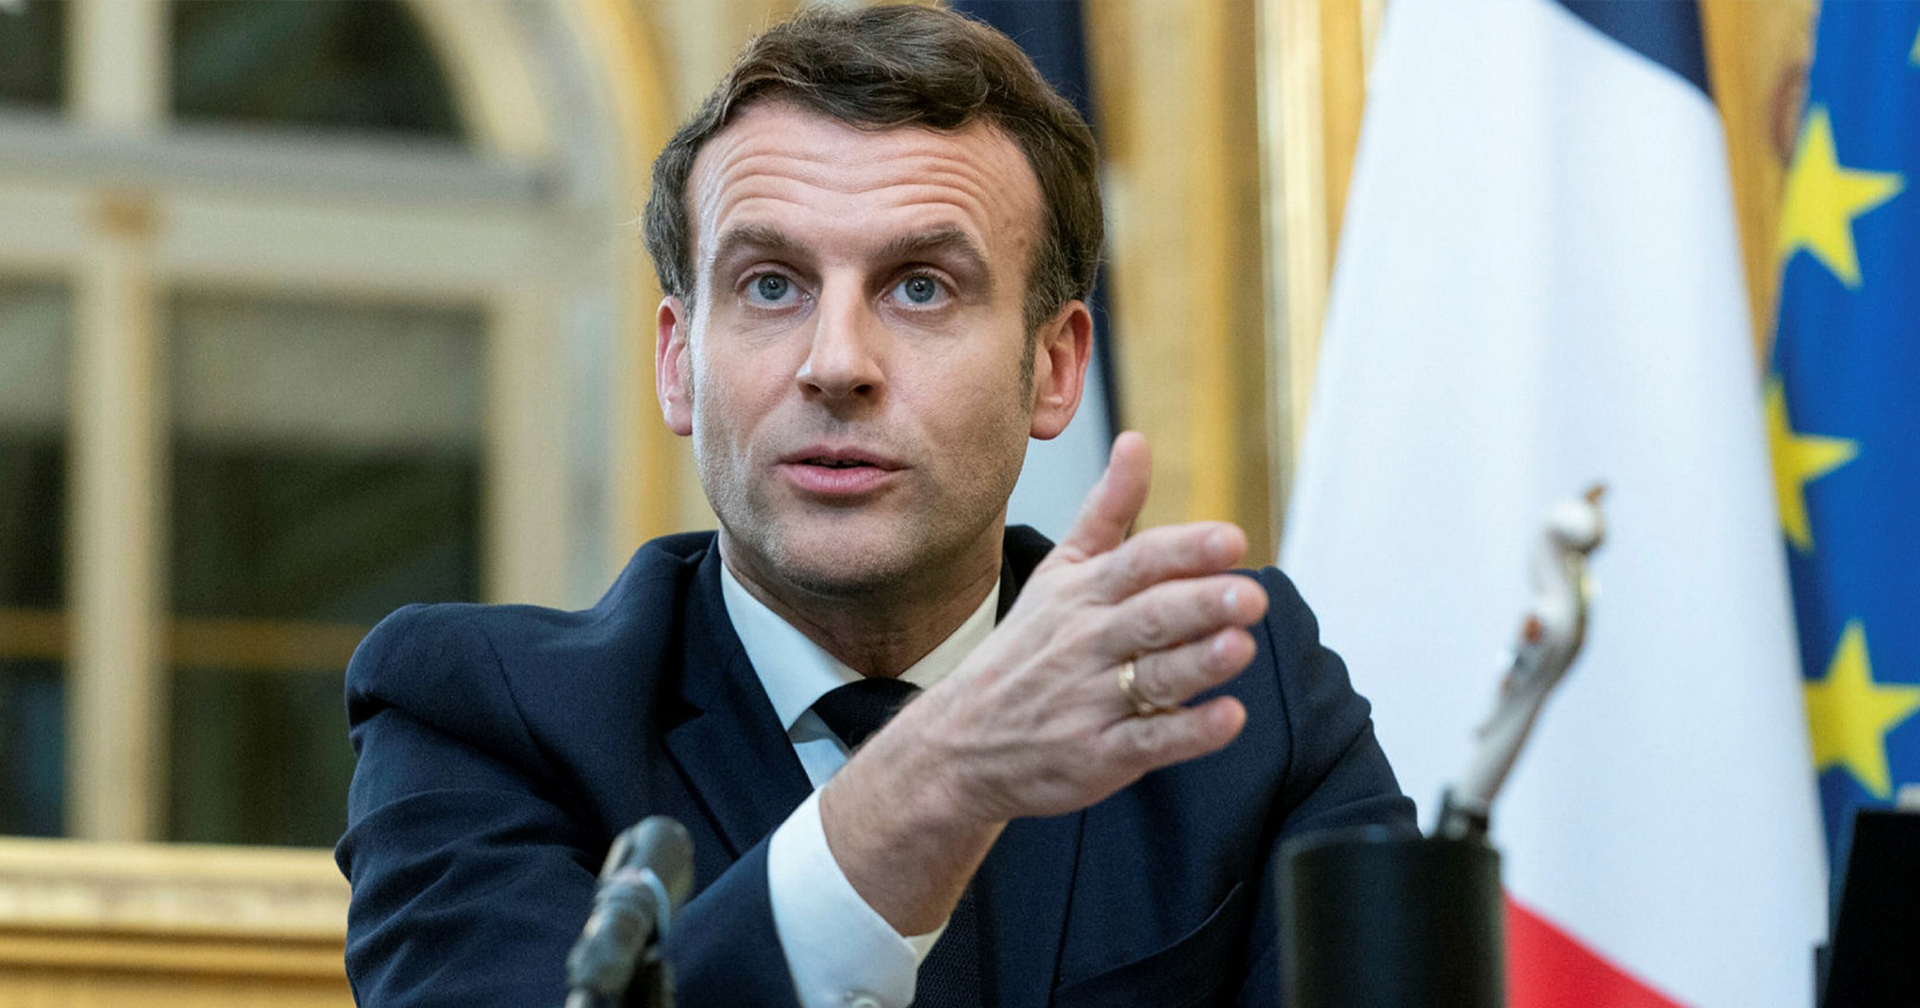 ประธานาธิบดีฝรั่งเศสบอกคนที่ไม่ฉีดวัคซีนคือคนเห็นแก่ตัวและขาดความรับผิดชอบ